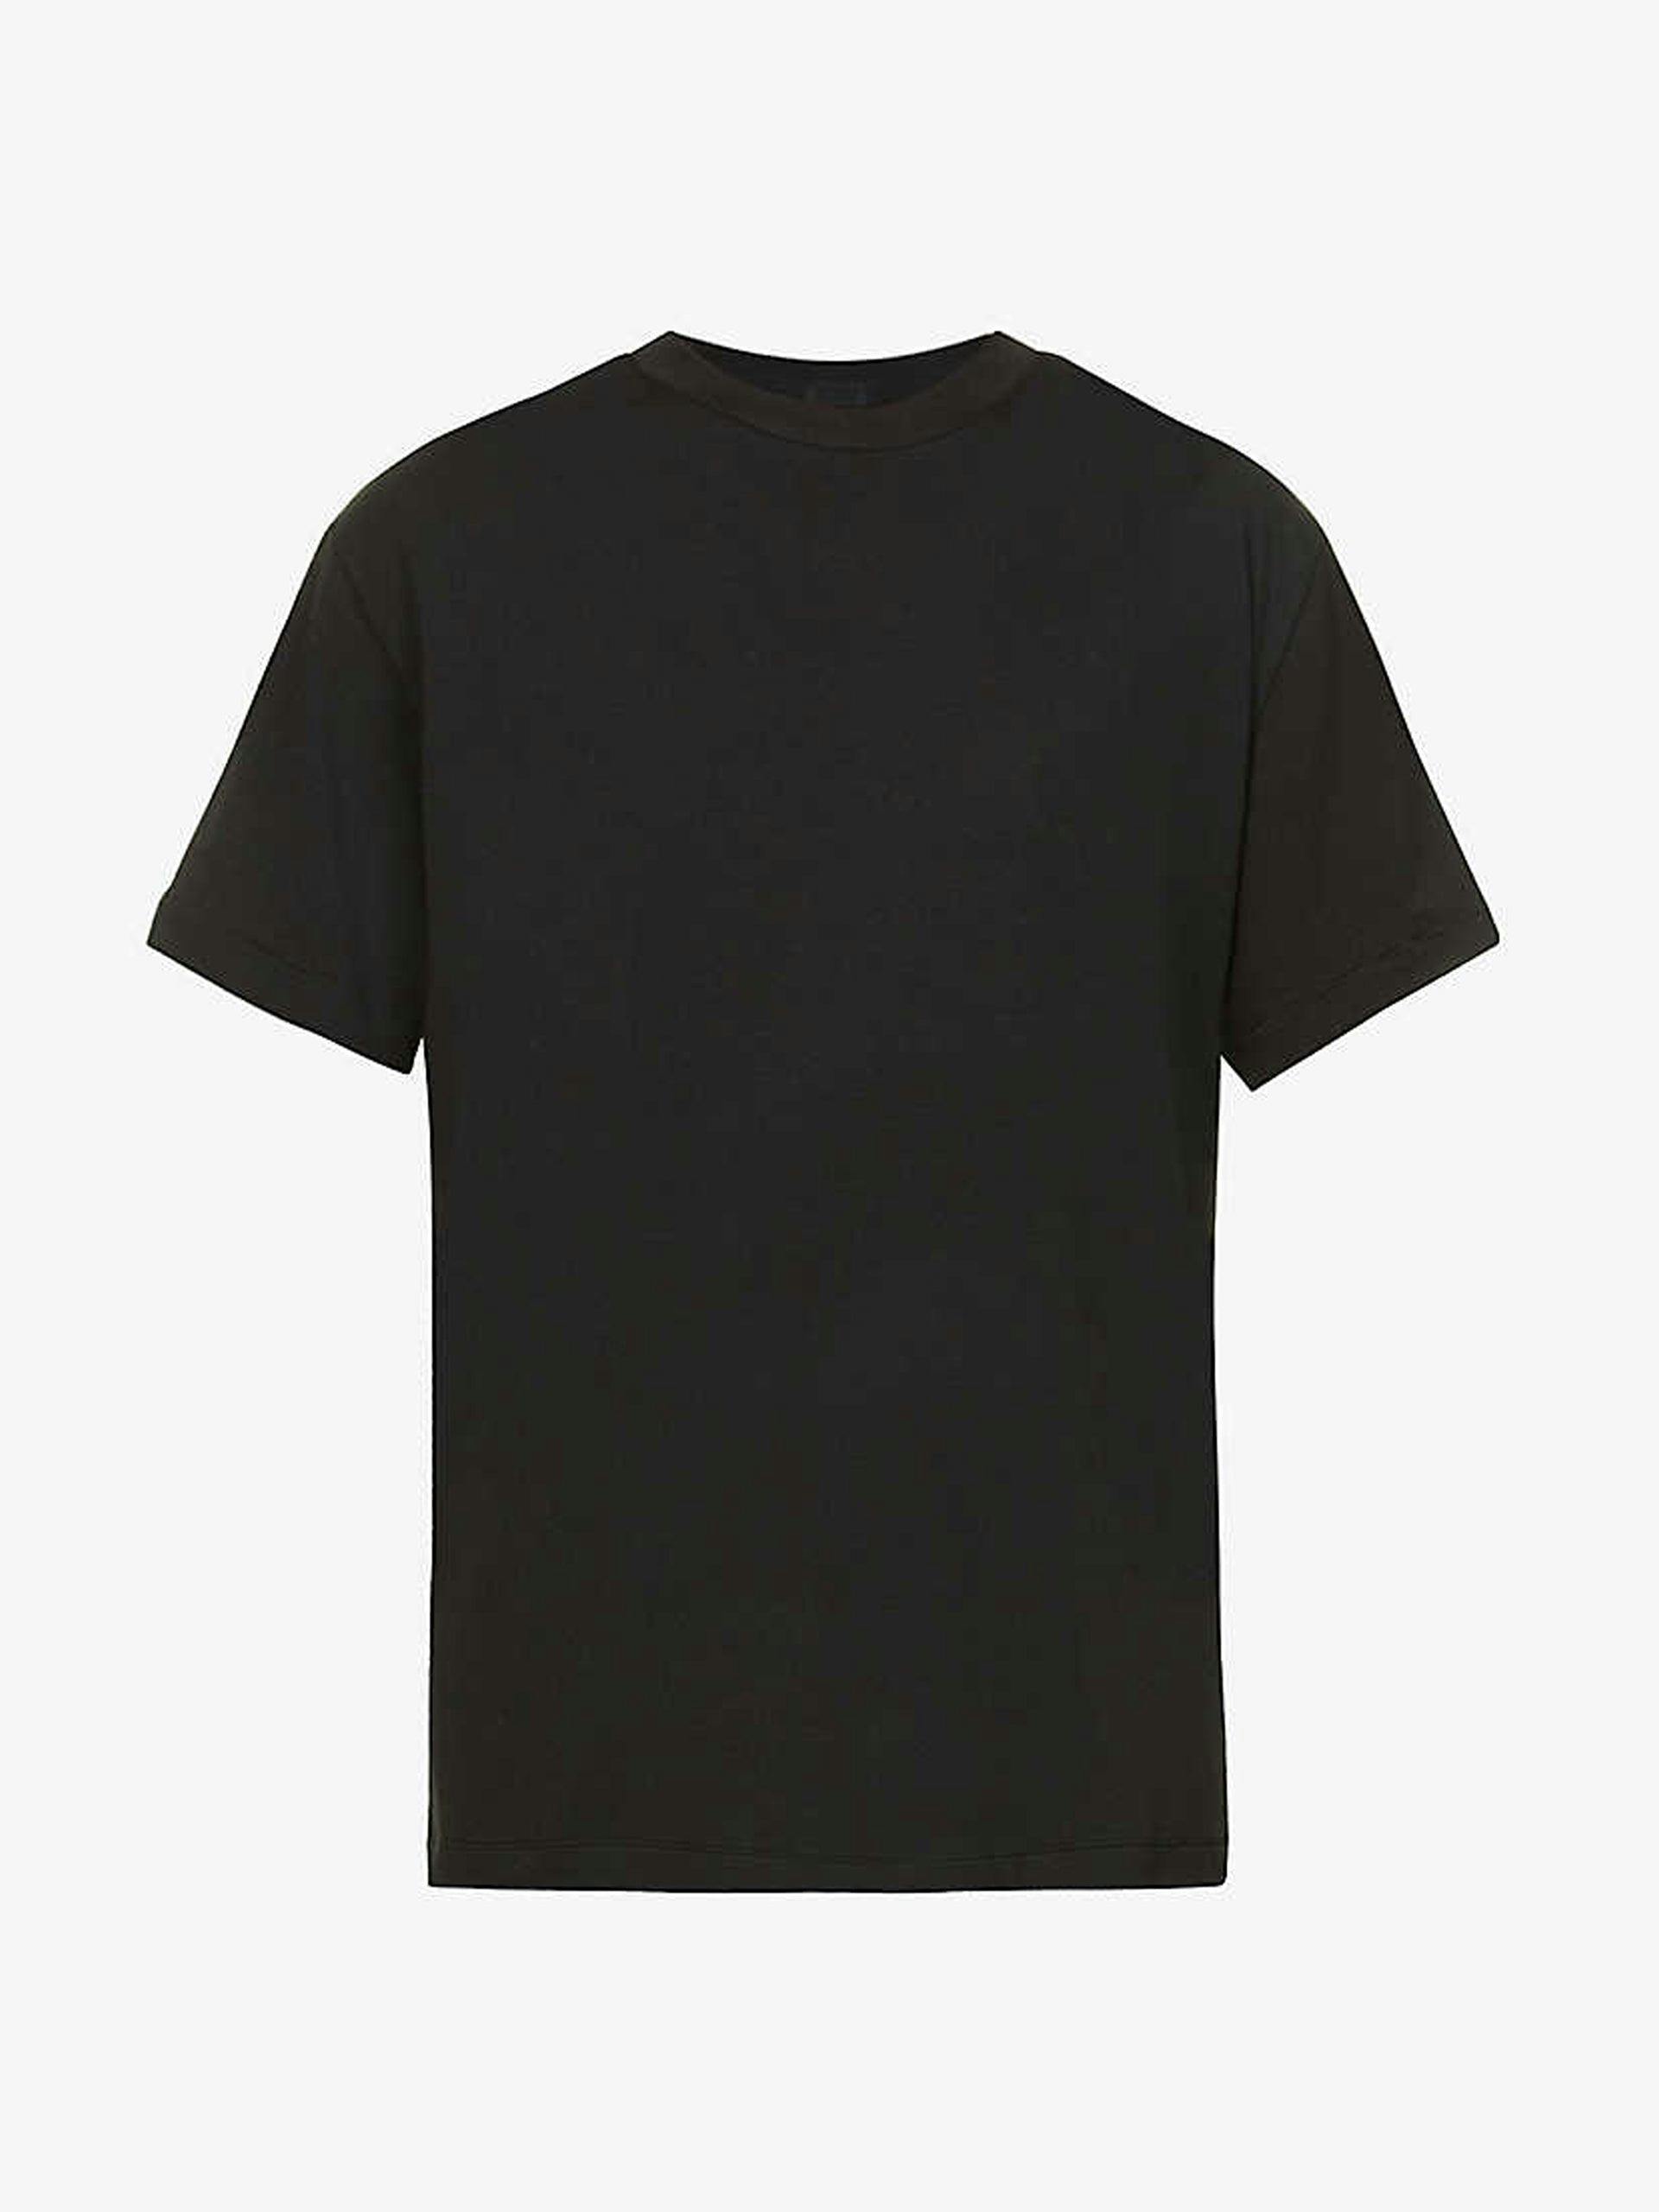 Oversized stretch-jersey black t-shirt